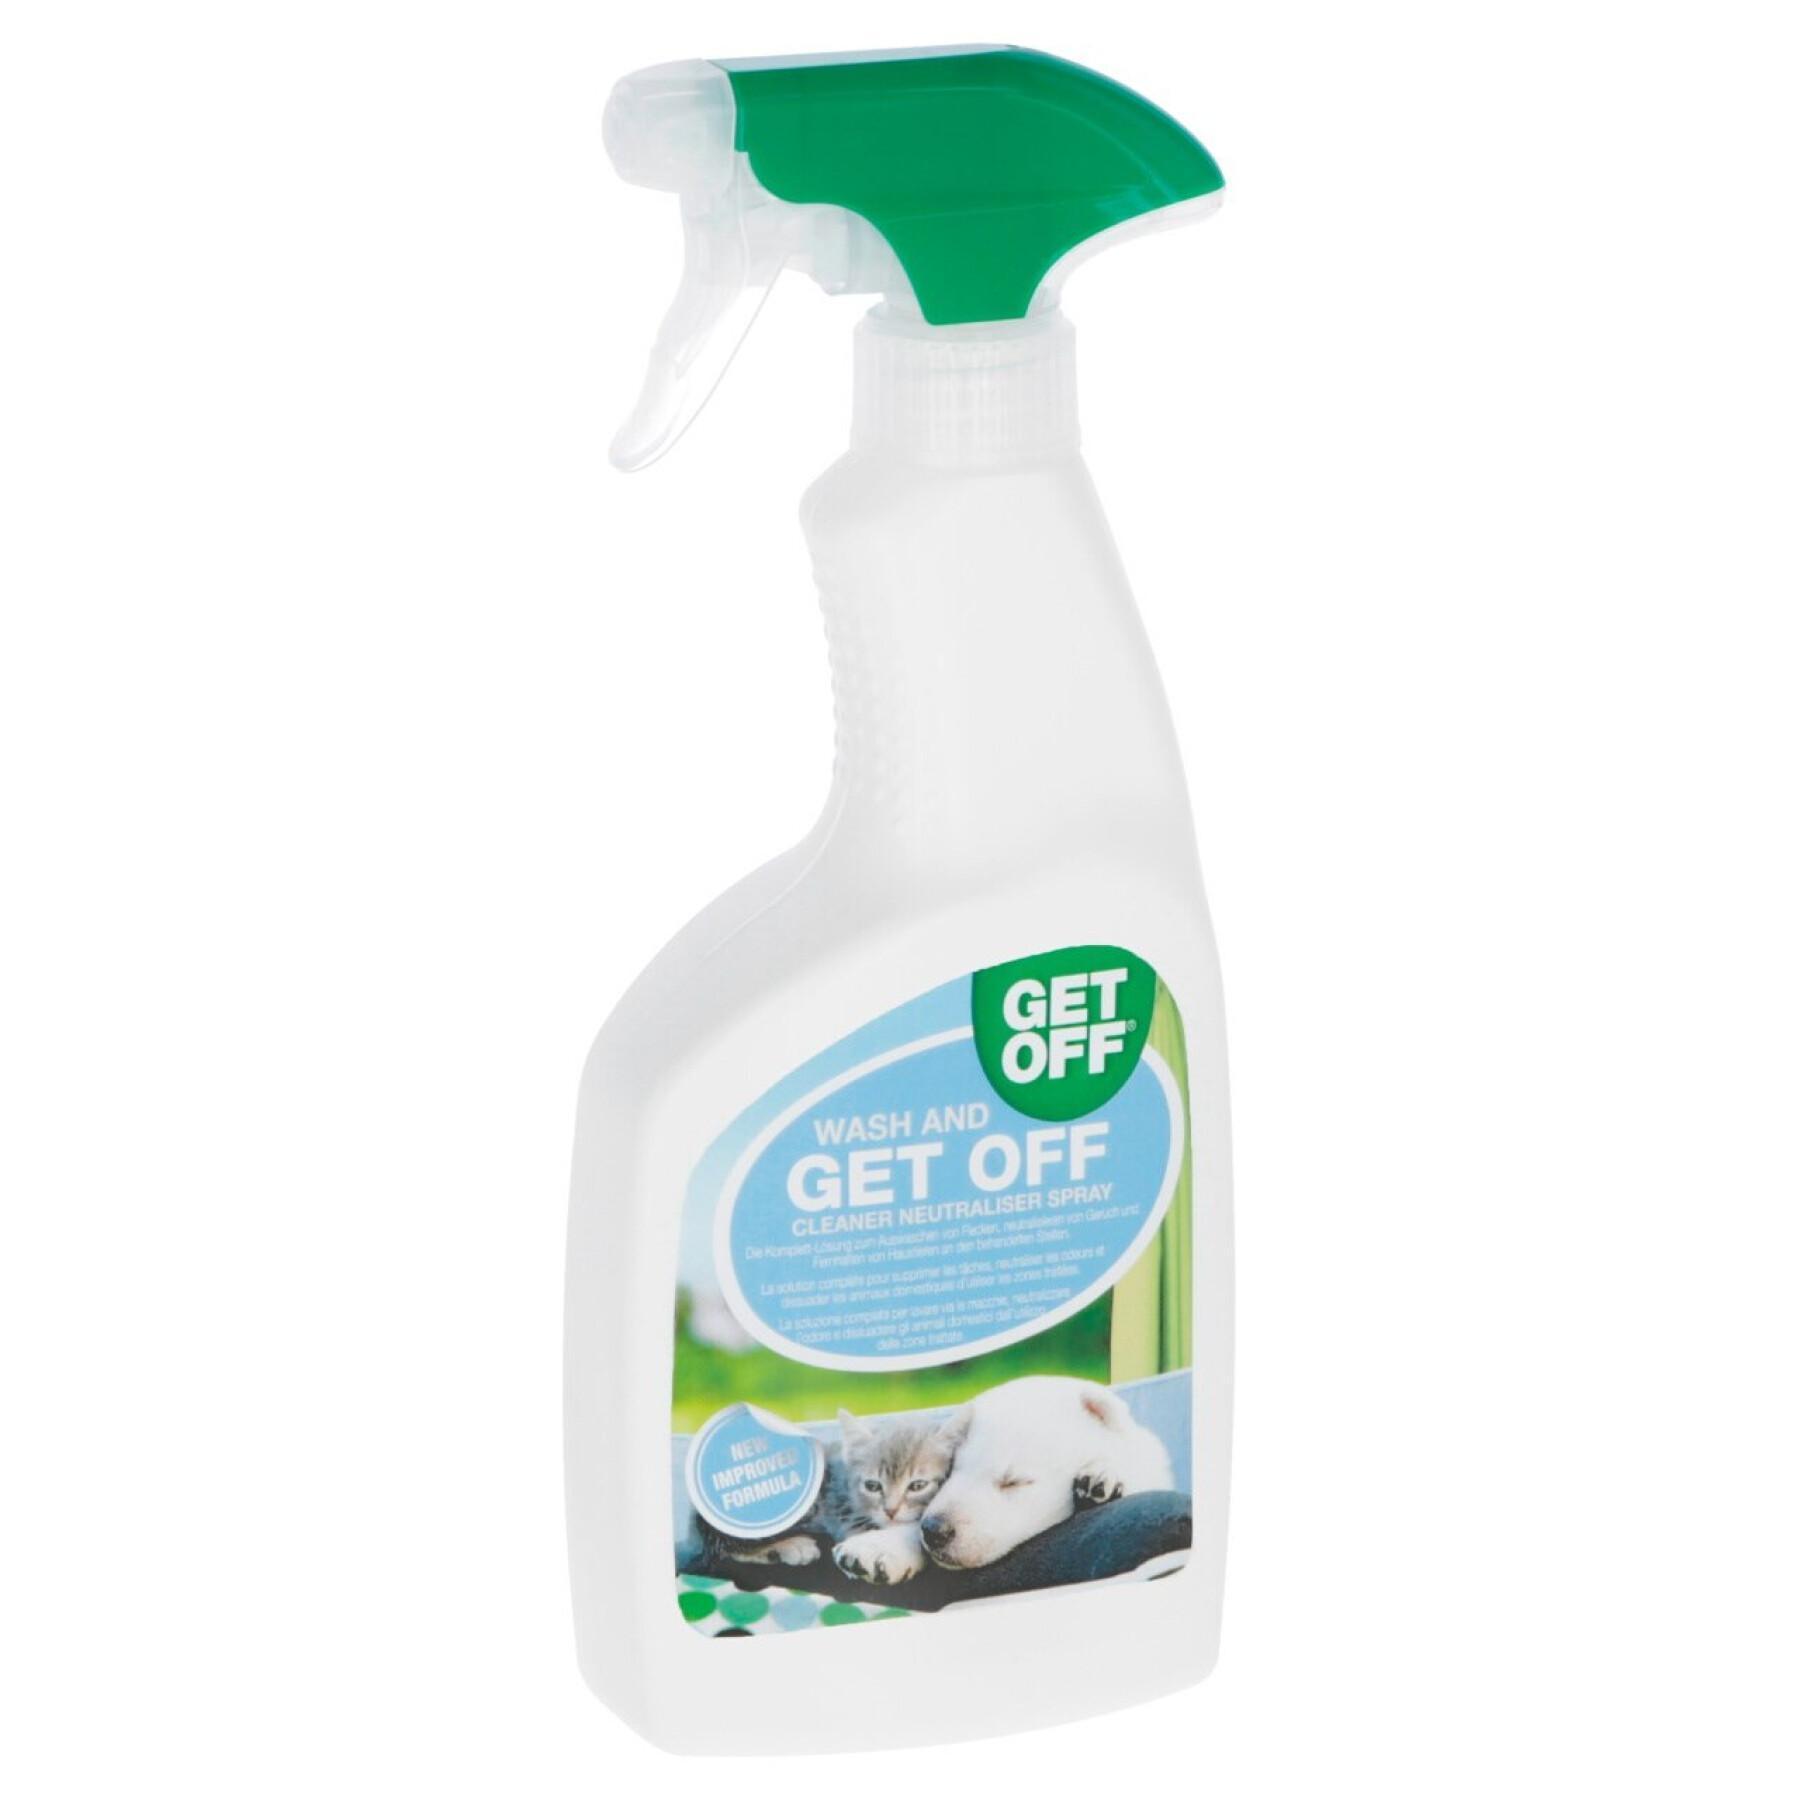 Spray detergente/neutralizzante Kerbl Spray Wash and Get Off